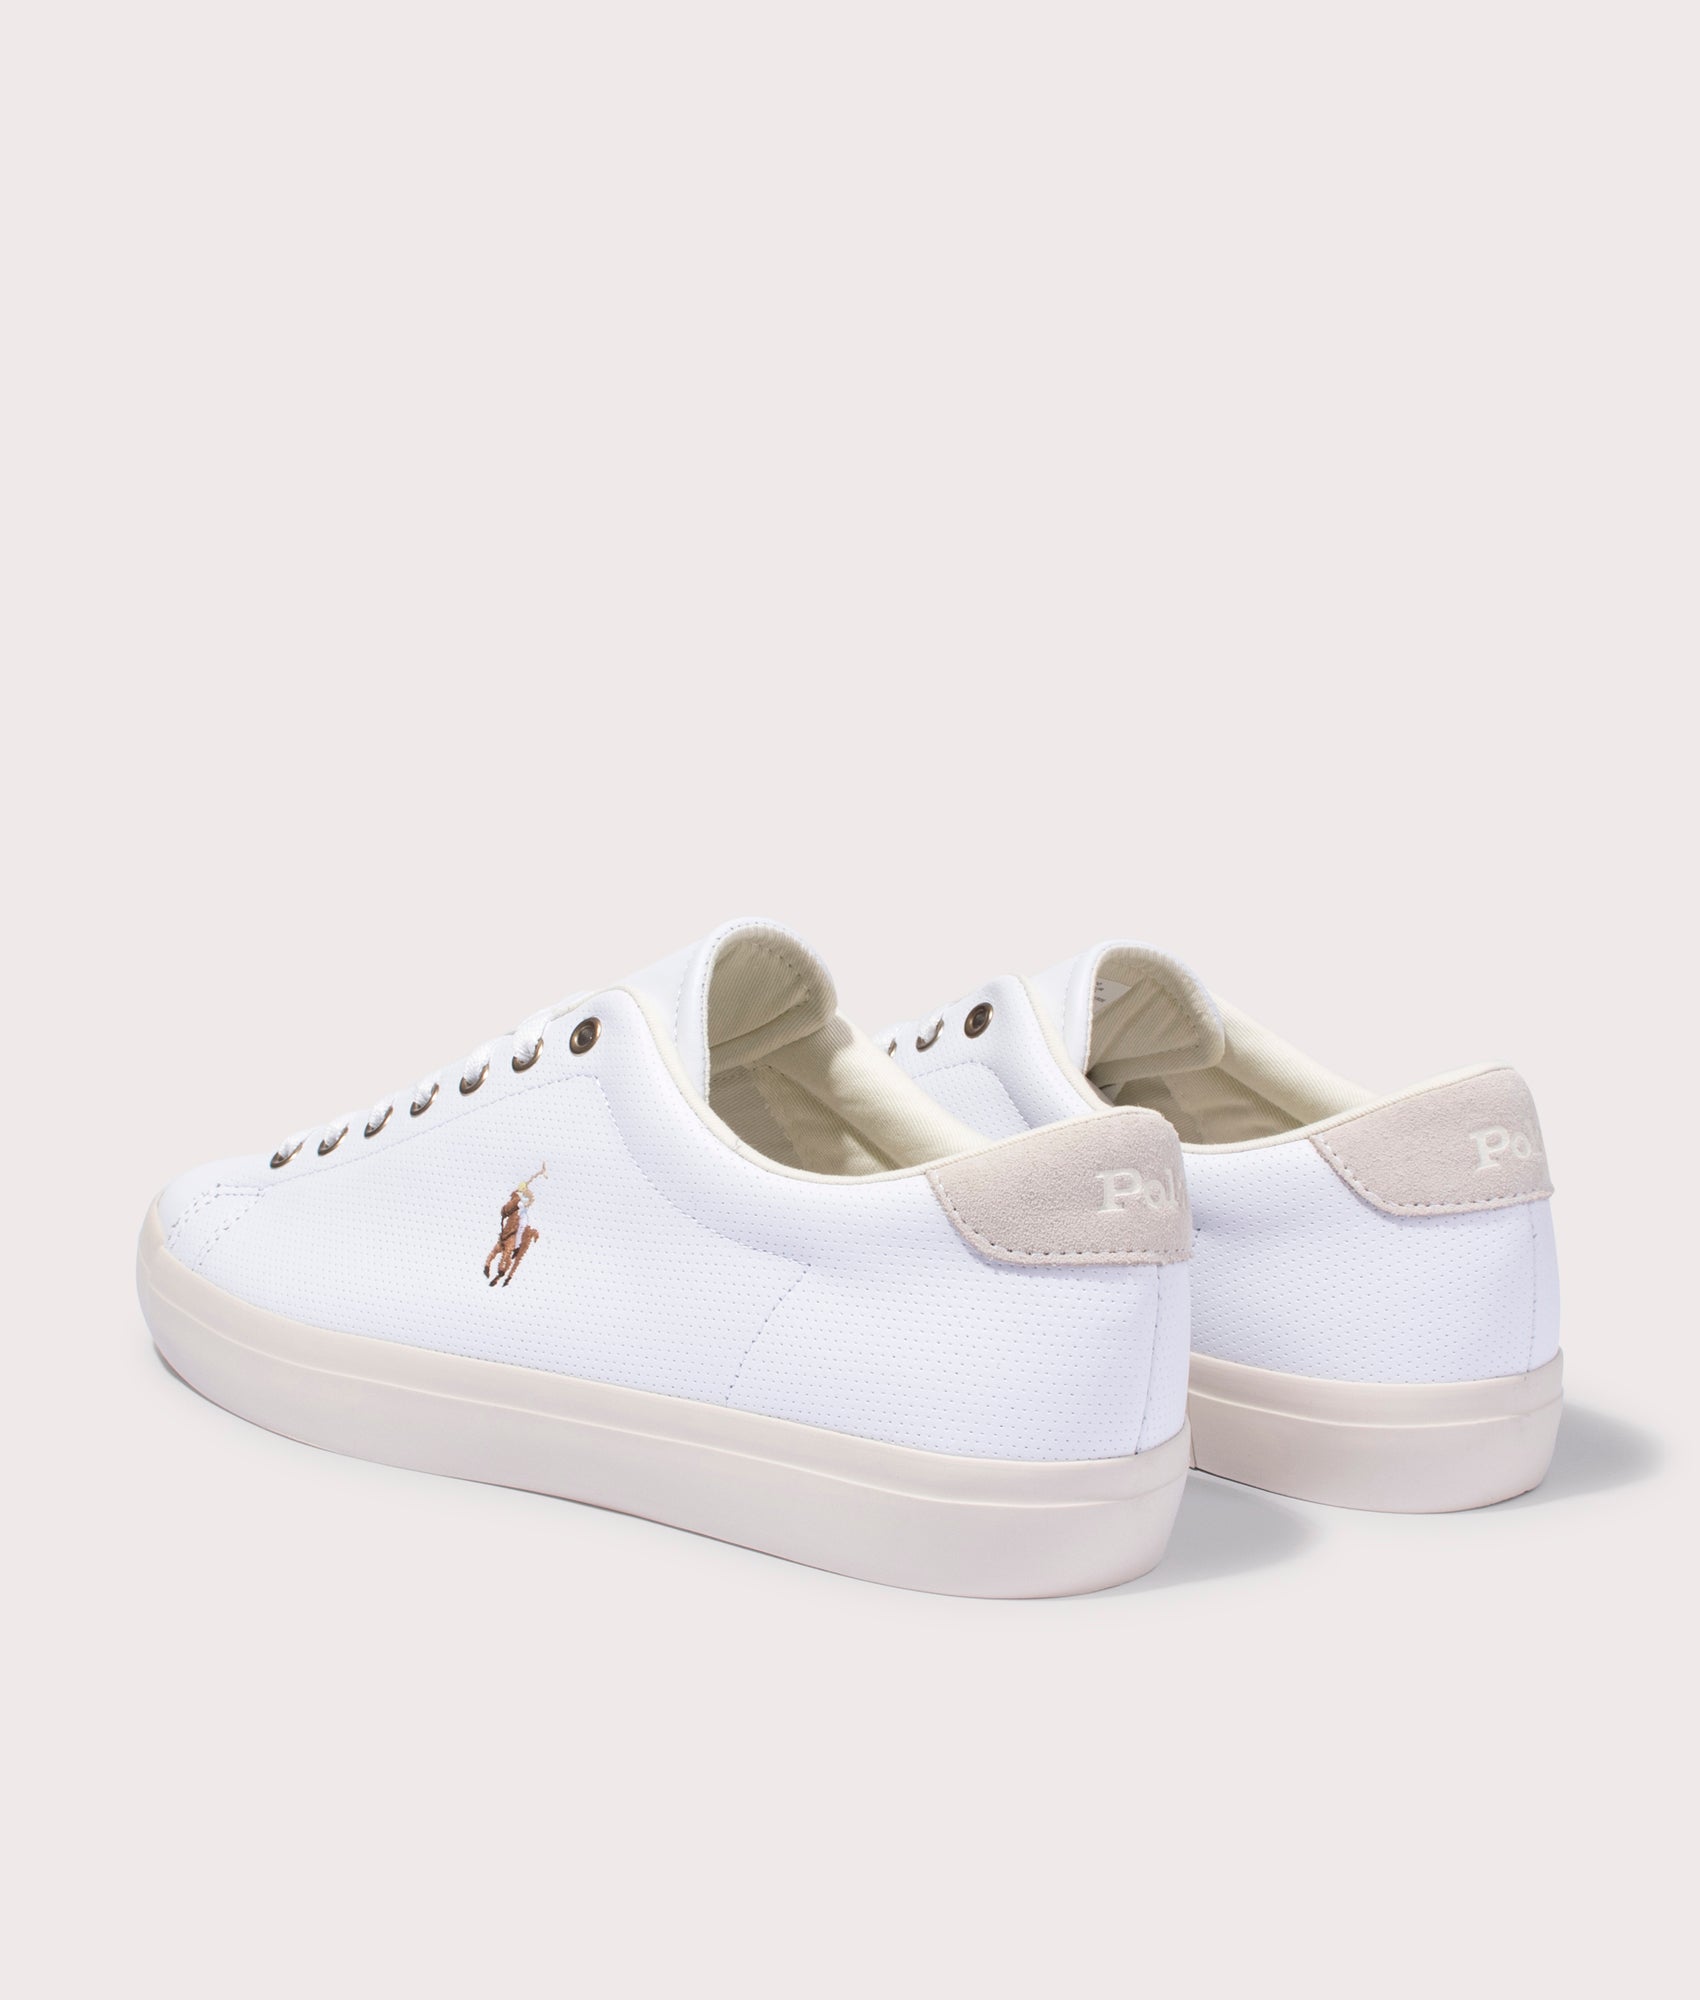 Longwood Sneakers White | Polo Ralph Lauren | EQVVS